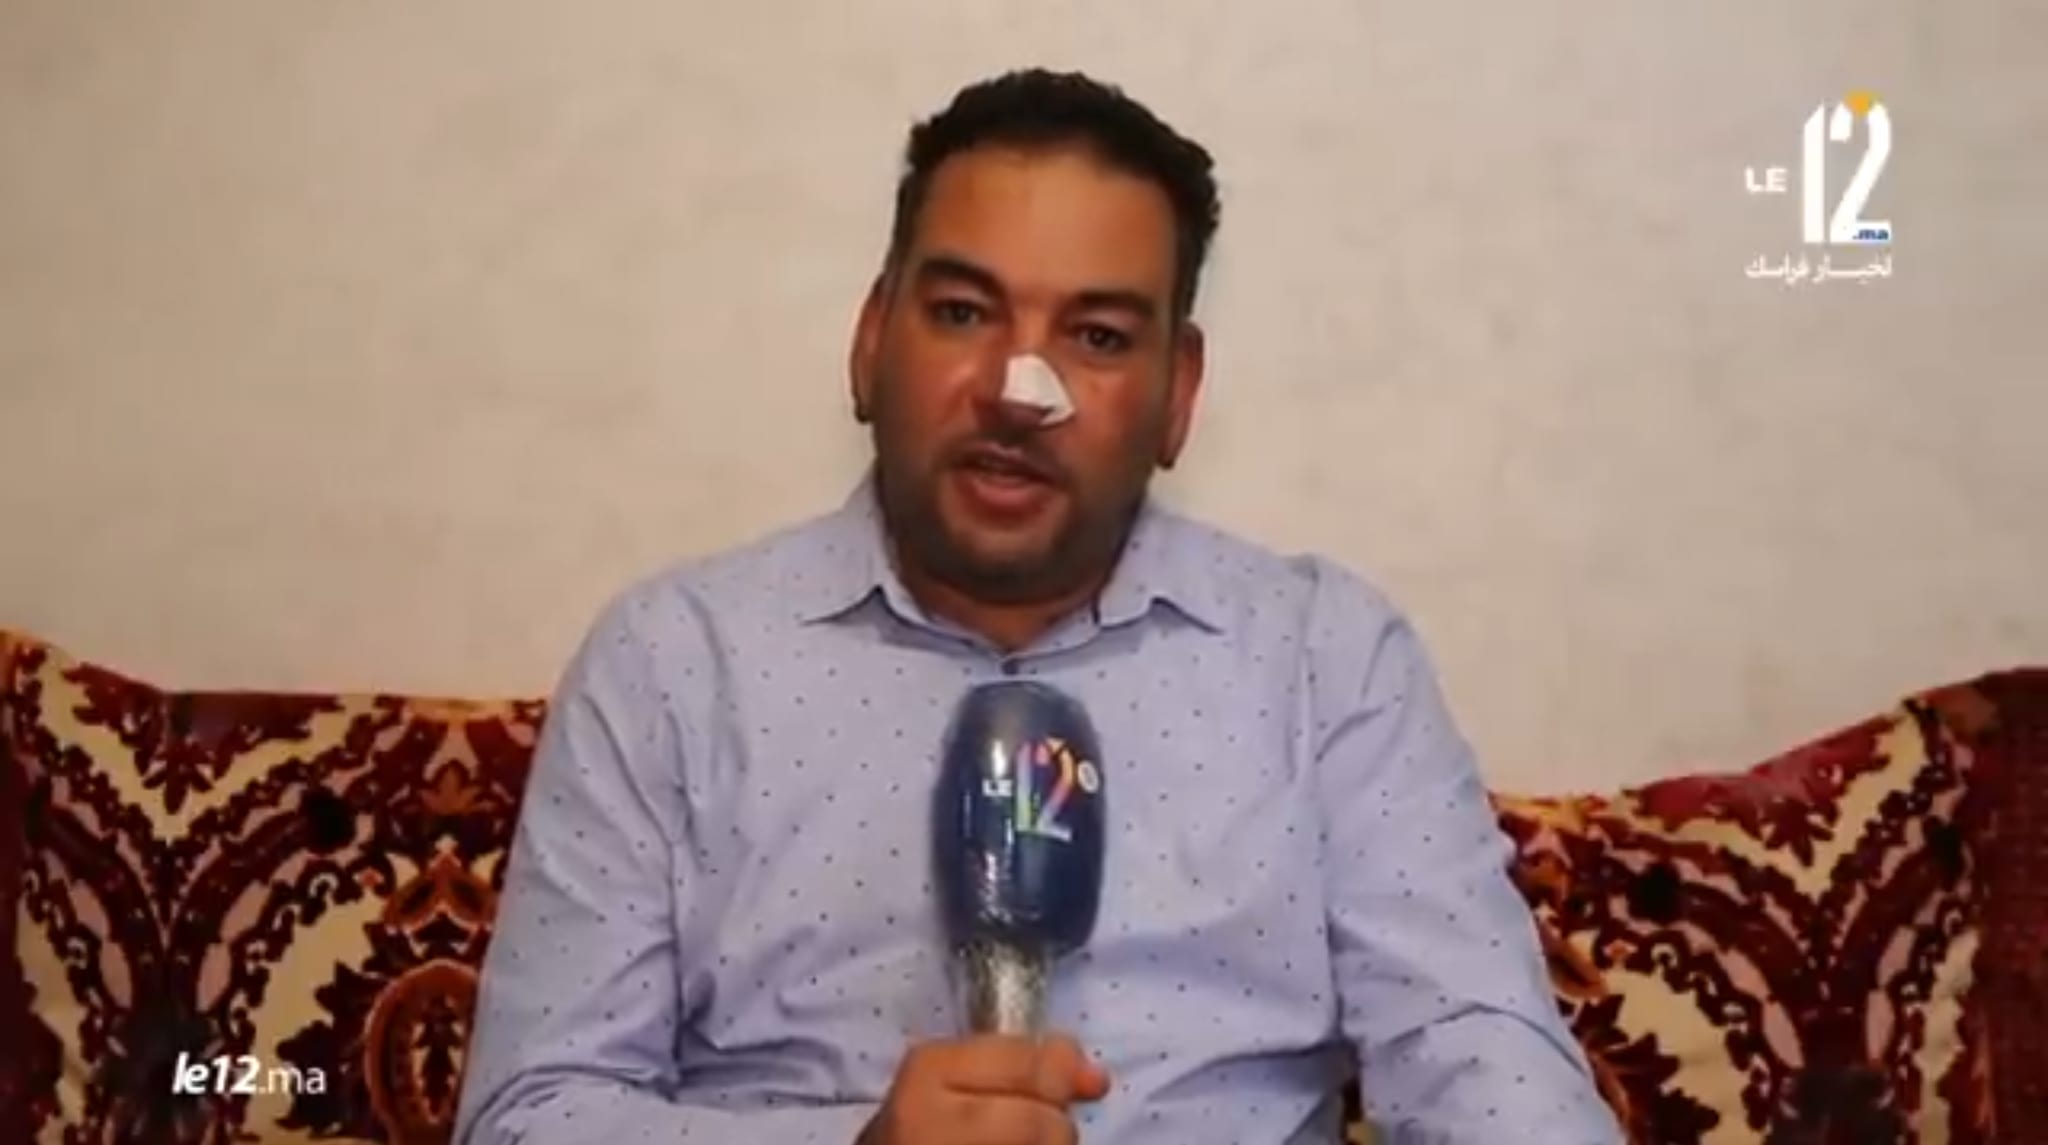 متابعة الحقوقي السدراوي في حالة إعتقال و 17 مارس تاريخ جلسة محاكمته (فيديوهات)